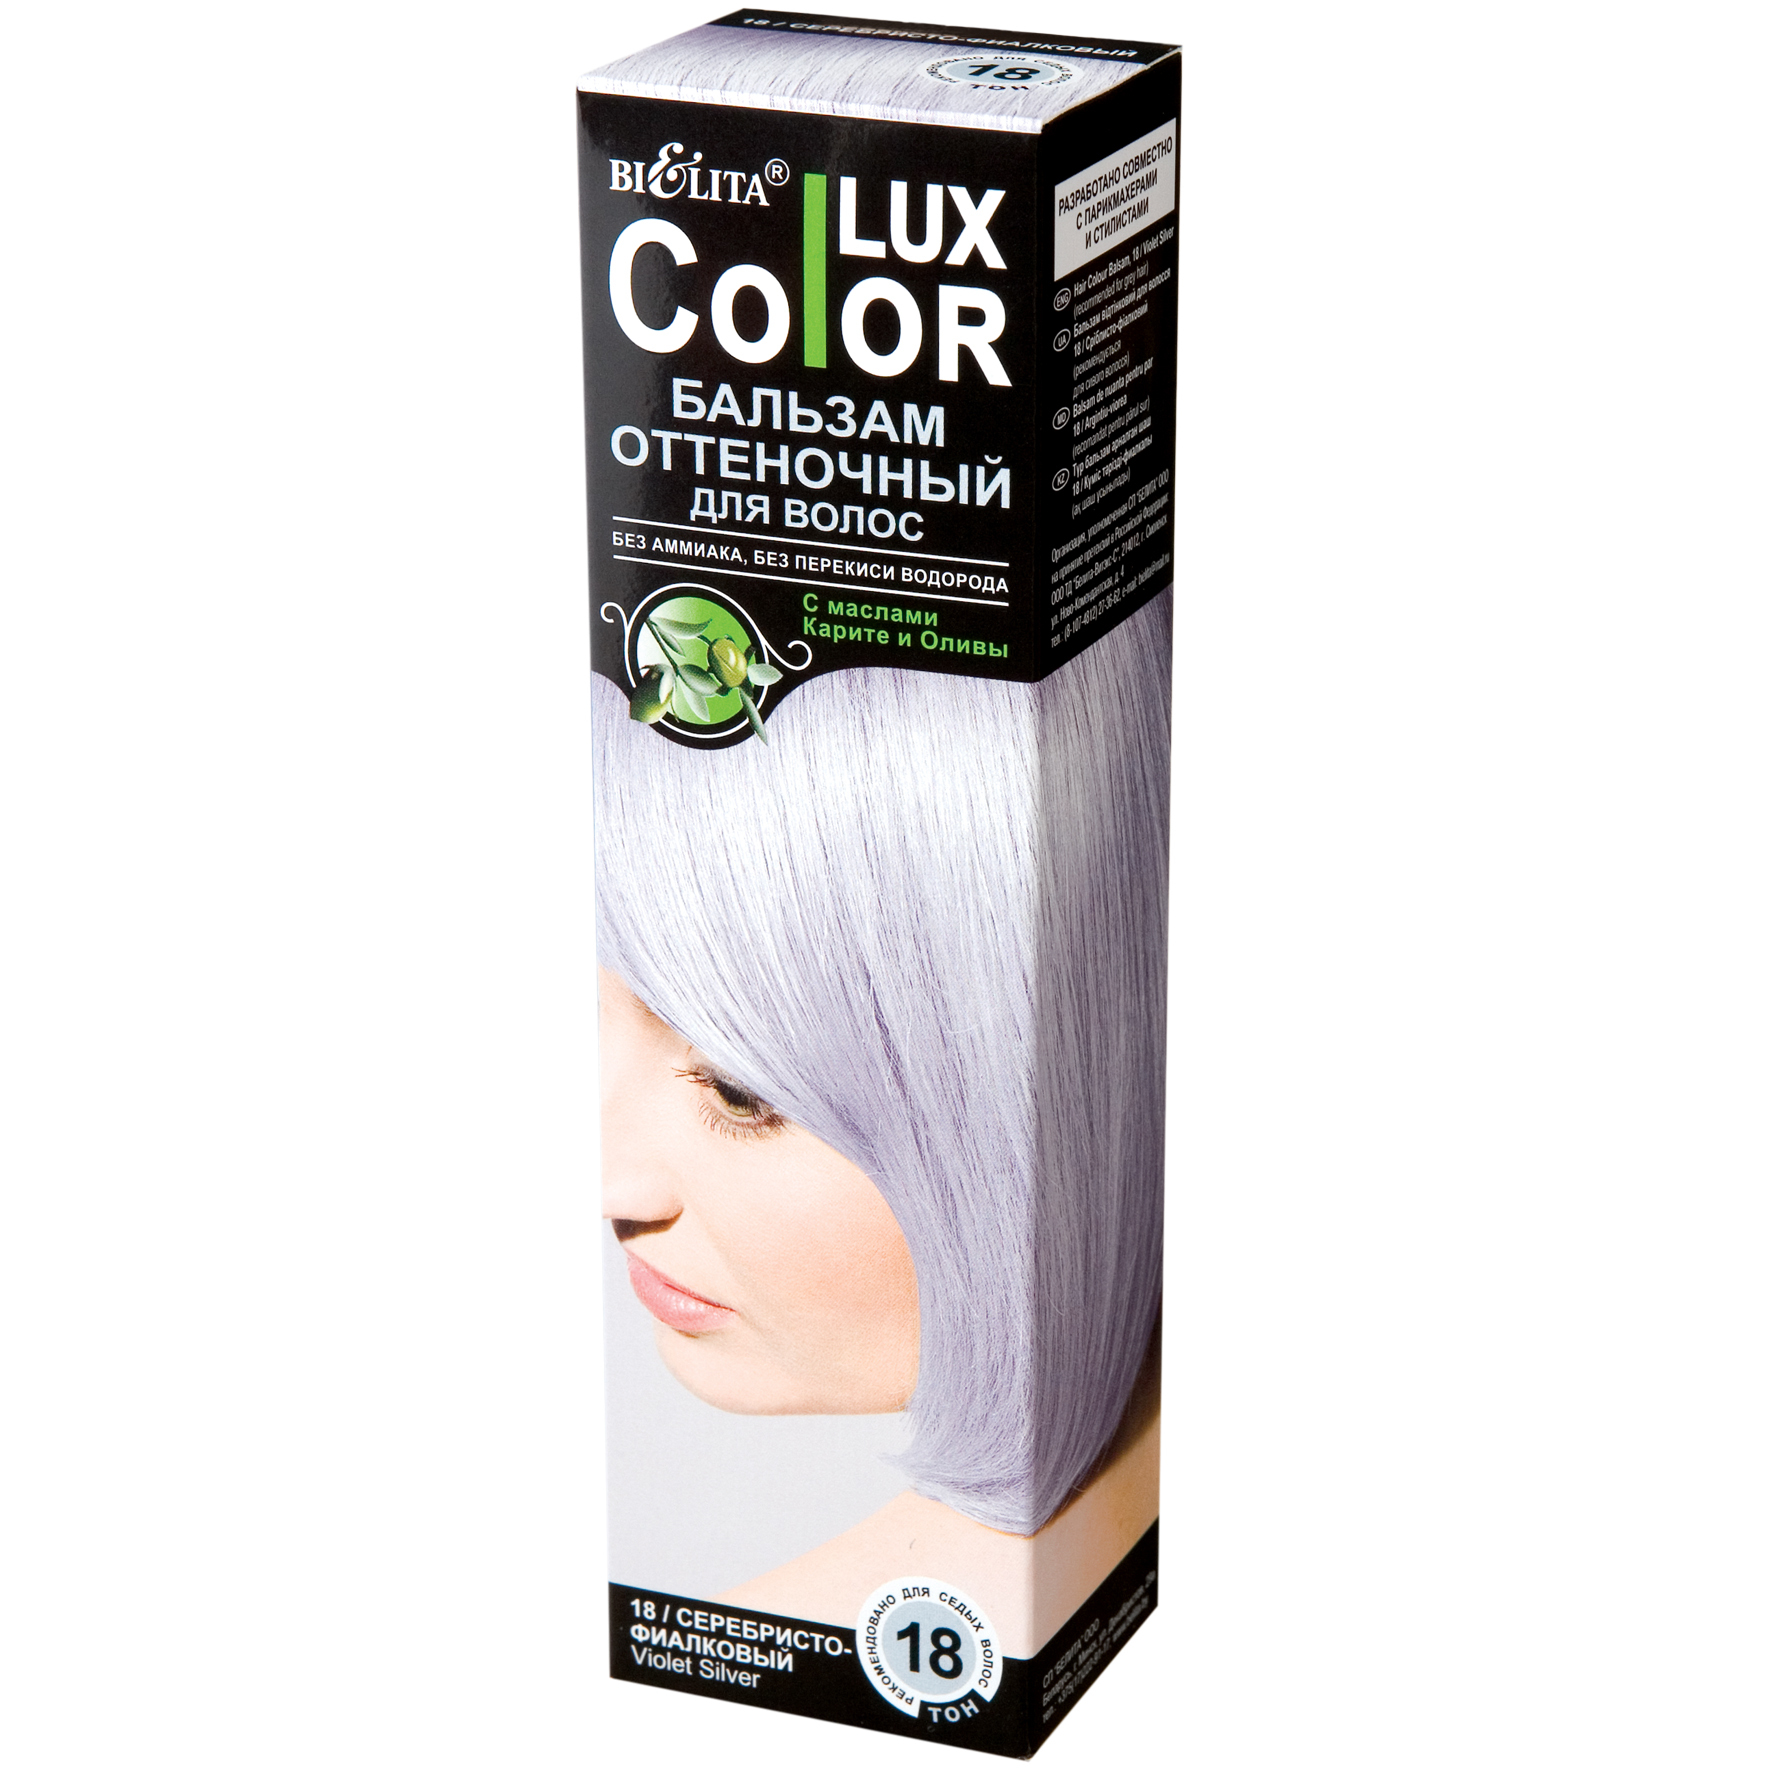 Оттеночный бальзам для волос тон. Lux Color бальзам оттеночный Color Lux 18. Белита колор Люкс оттеночный бальзам. Оттеночный бальзам для волос "Color Lux" тон: 19 серебристый 100 мл. Bielita Color Lux бальзам оттеночный.